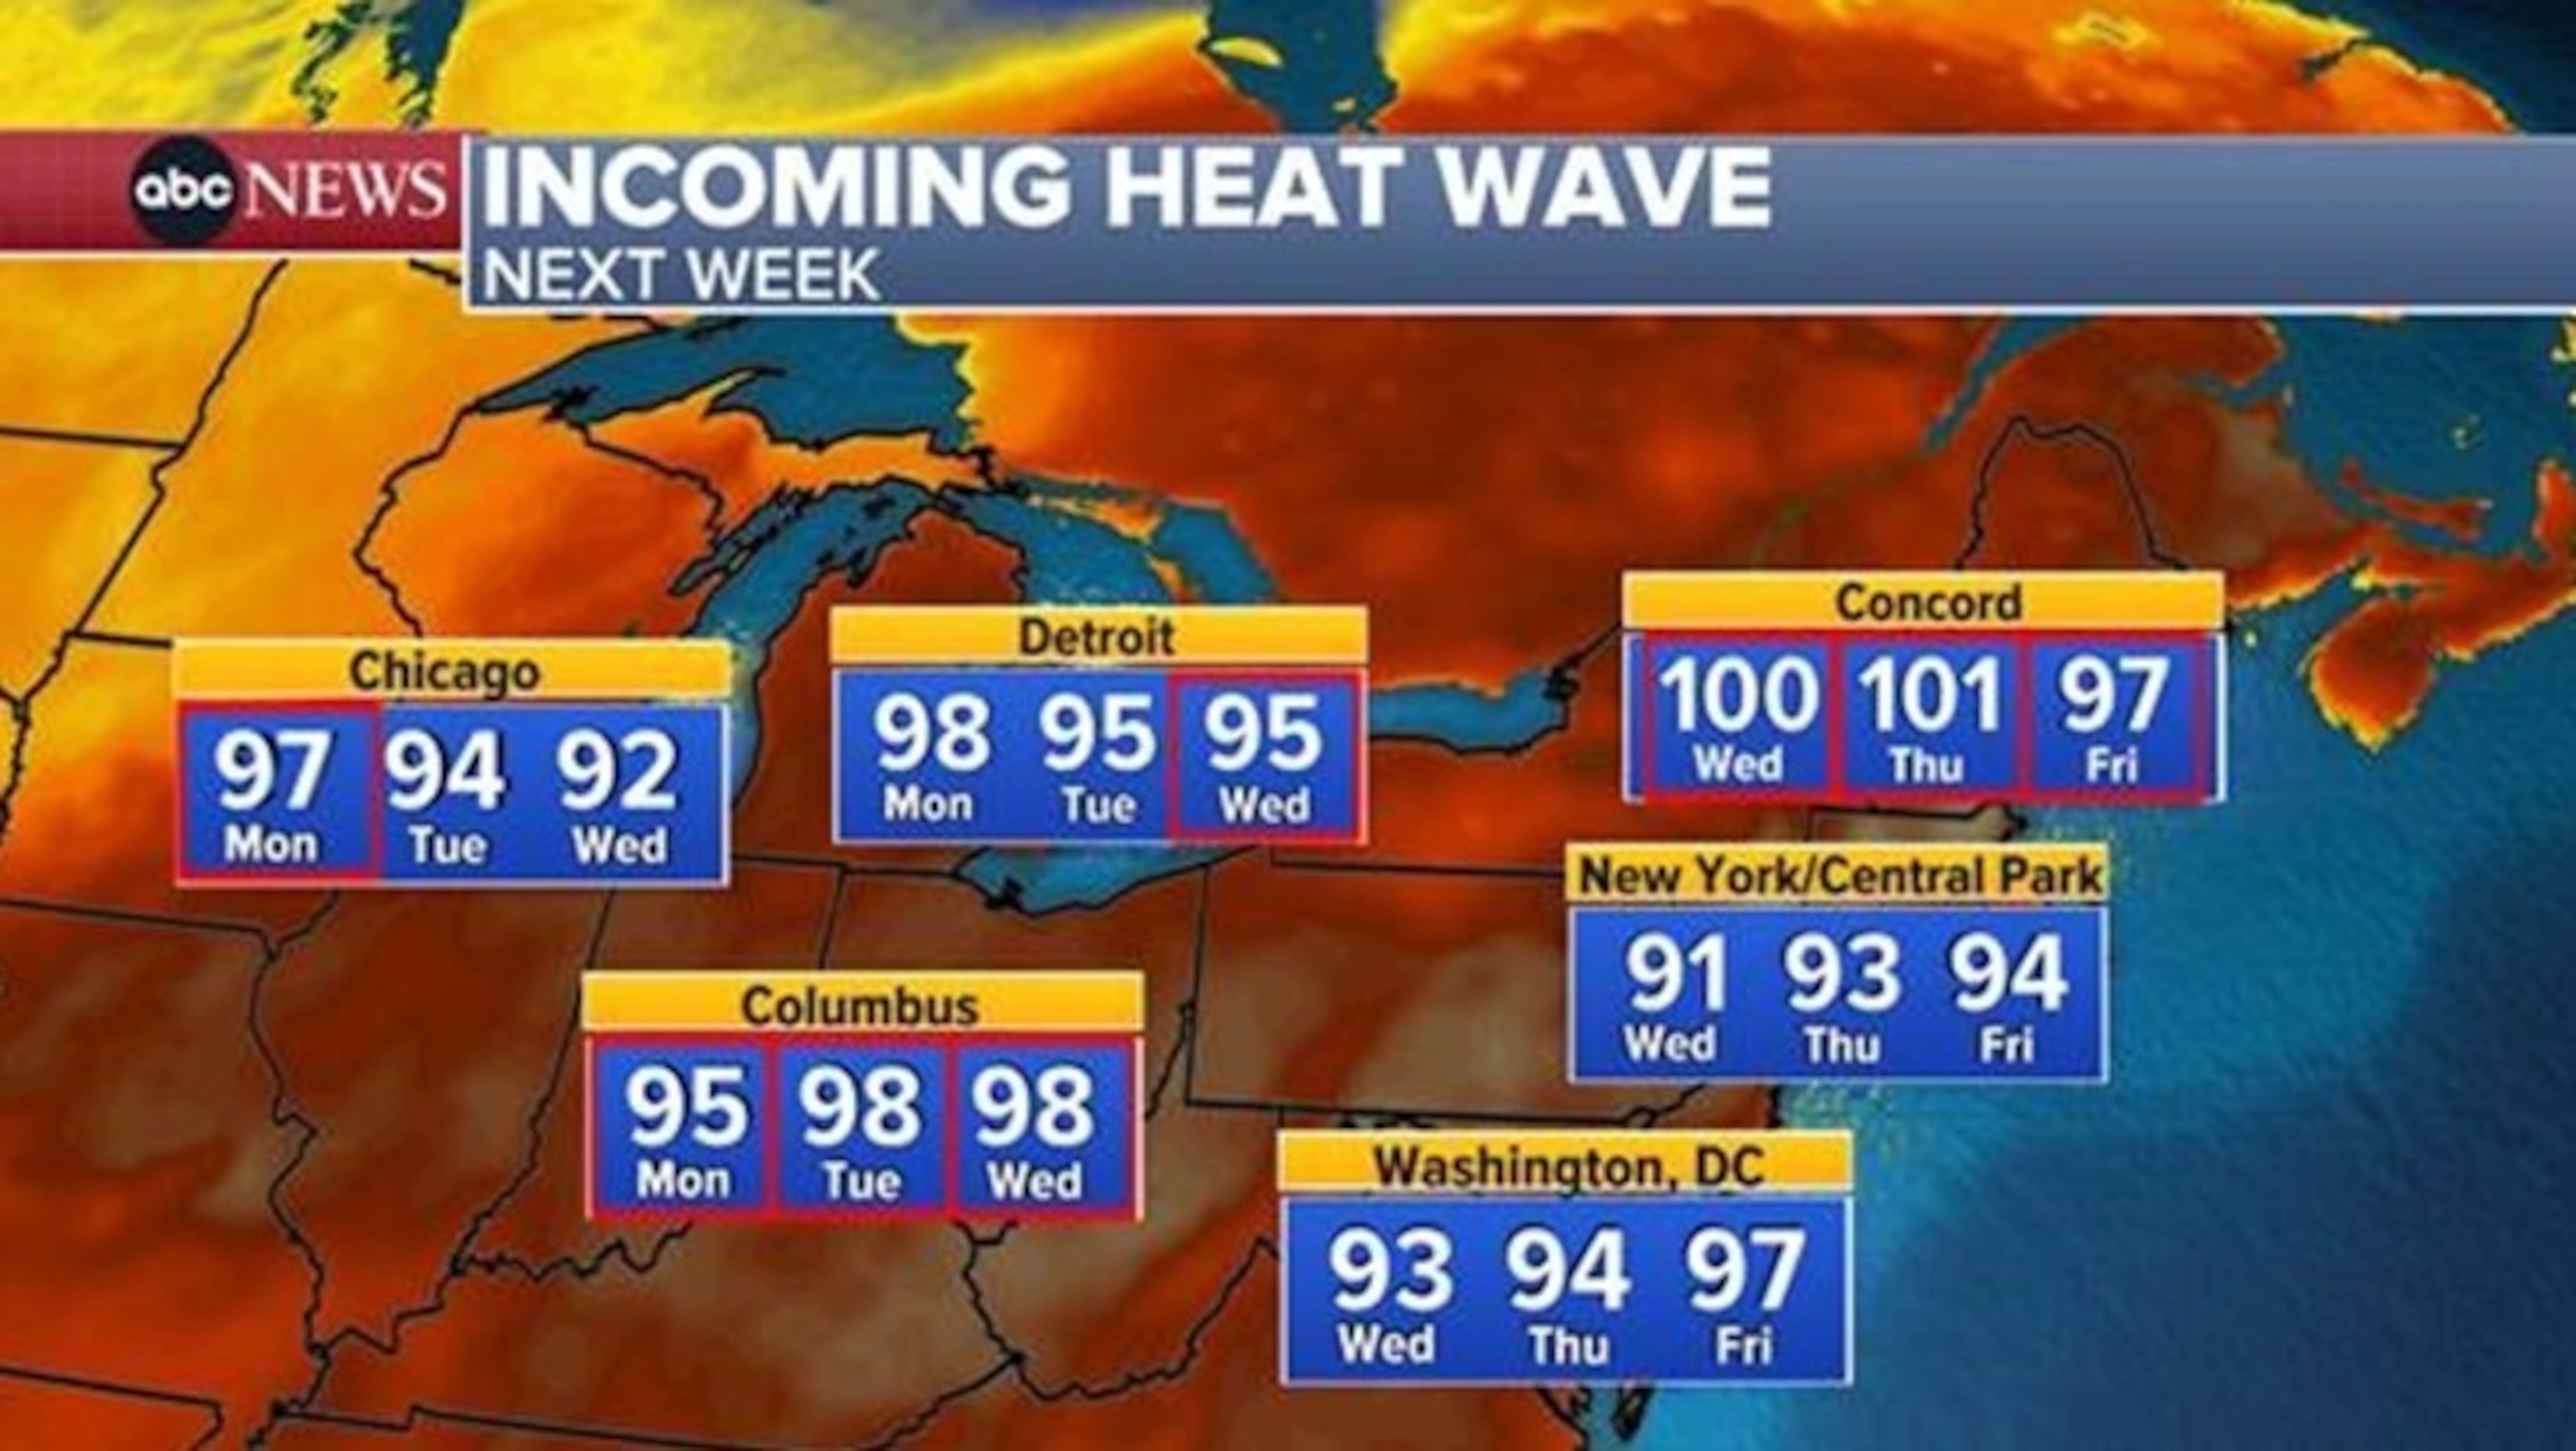 PHOTO: heat wave next week weather graphic